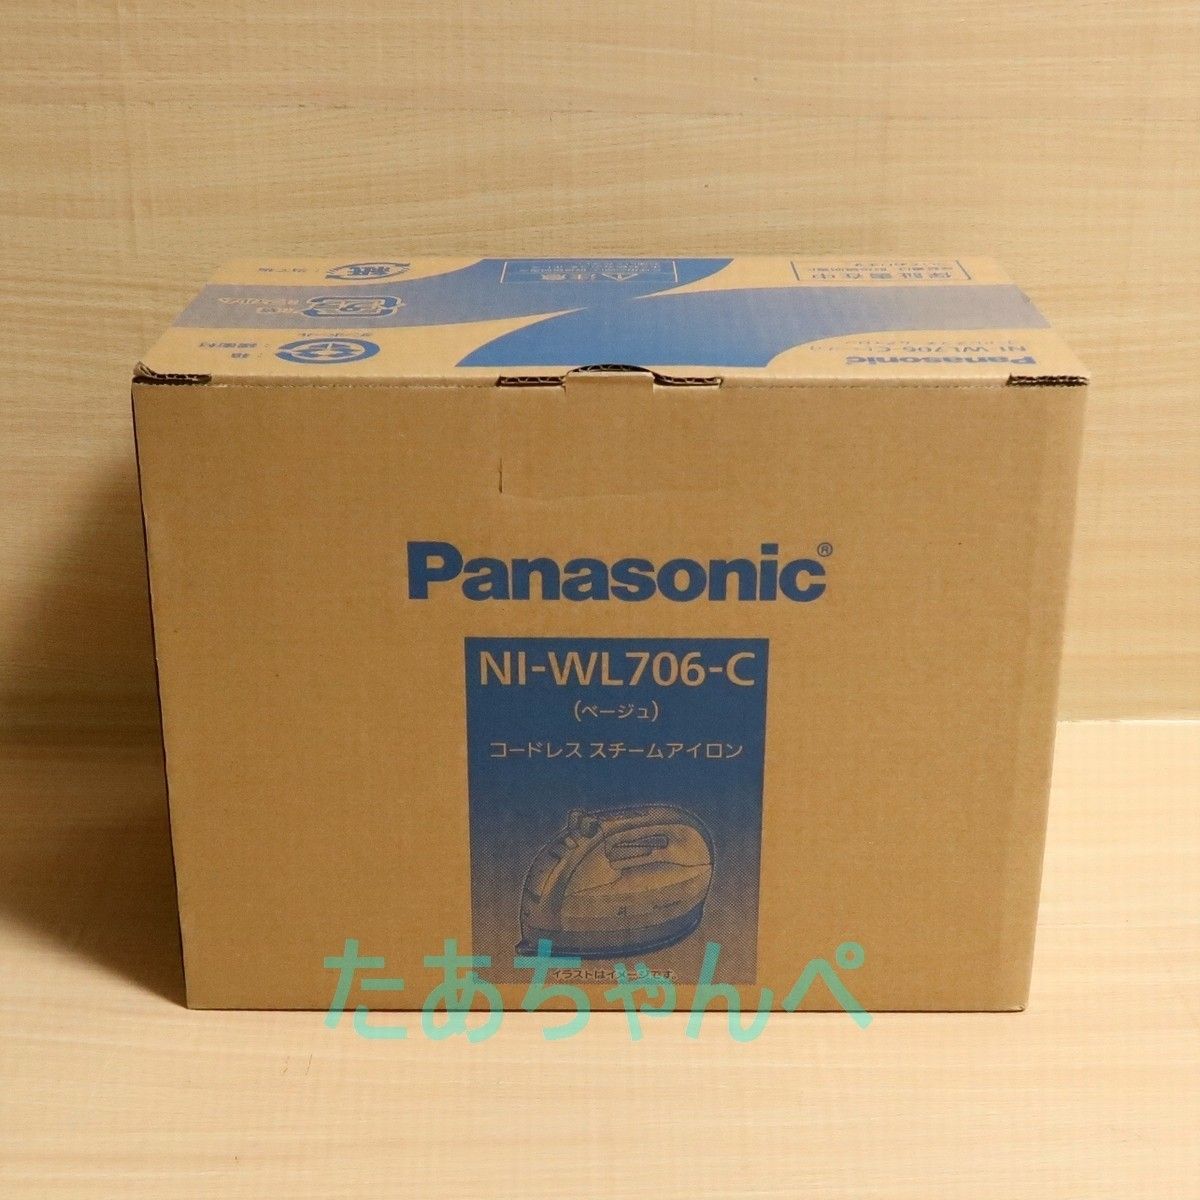 新品★Panasonic パナソニック カルル NI-WL706-C ベージュ/コードレススチームアイロン/Wヘッドベース